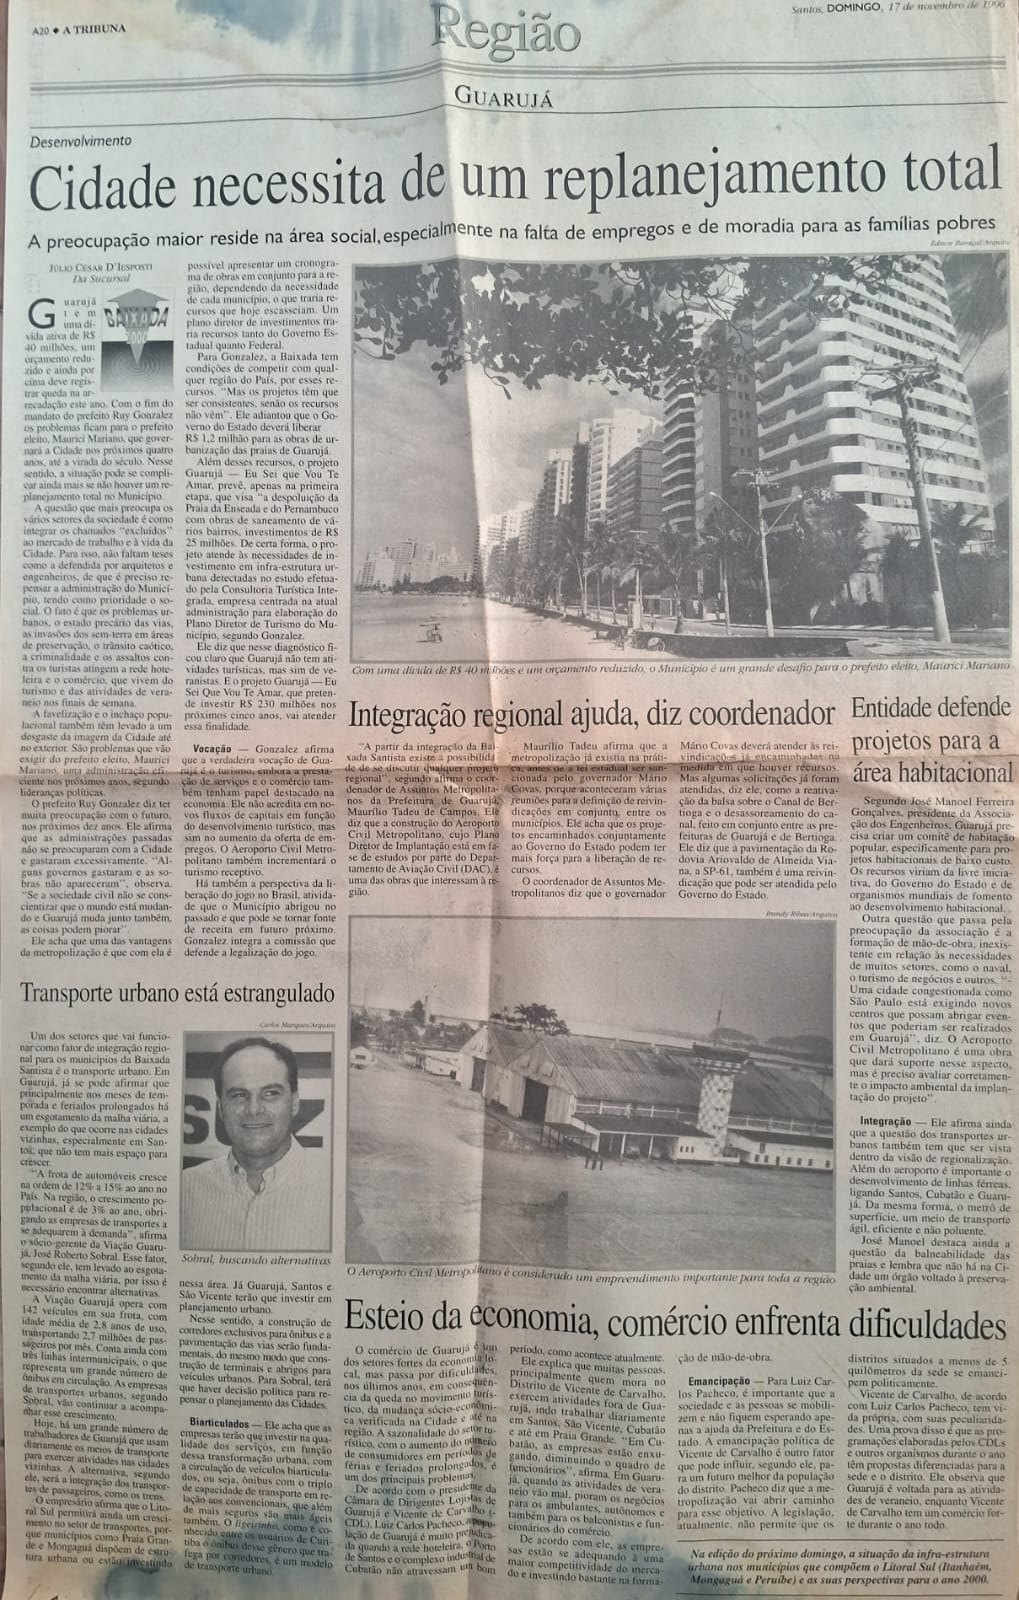 A TRIBUNA – Nov. de 1996